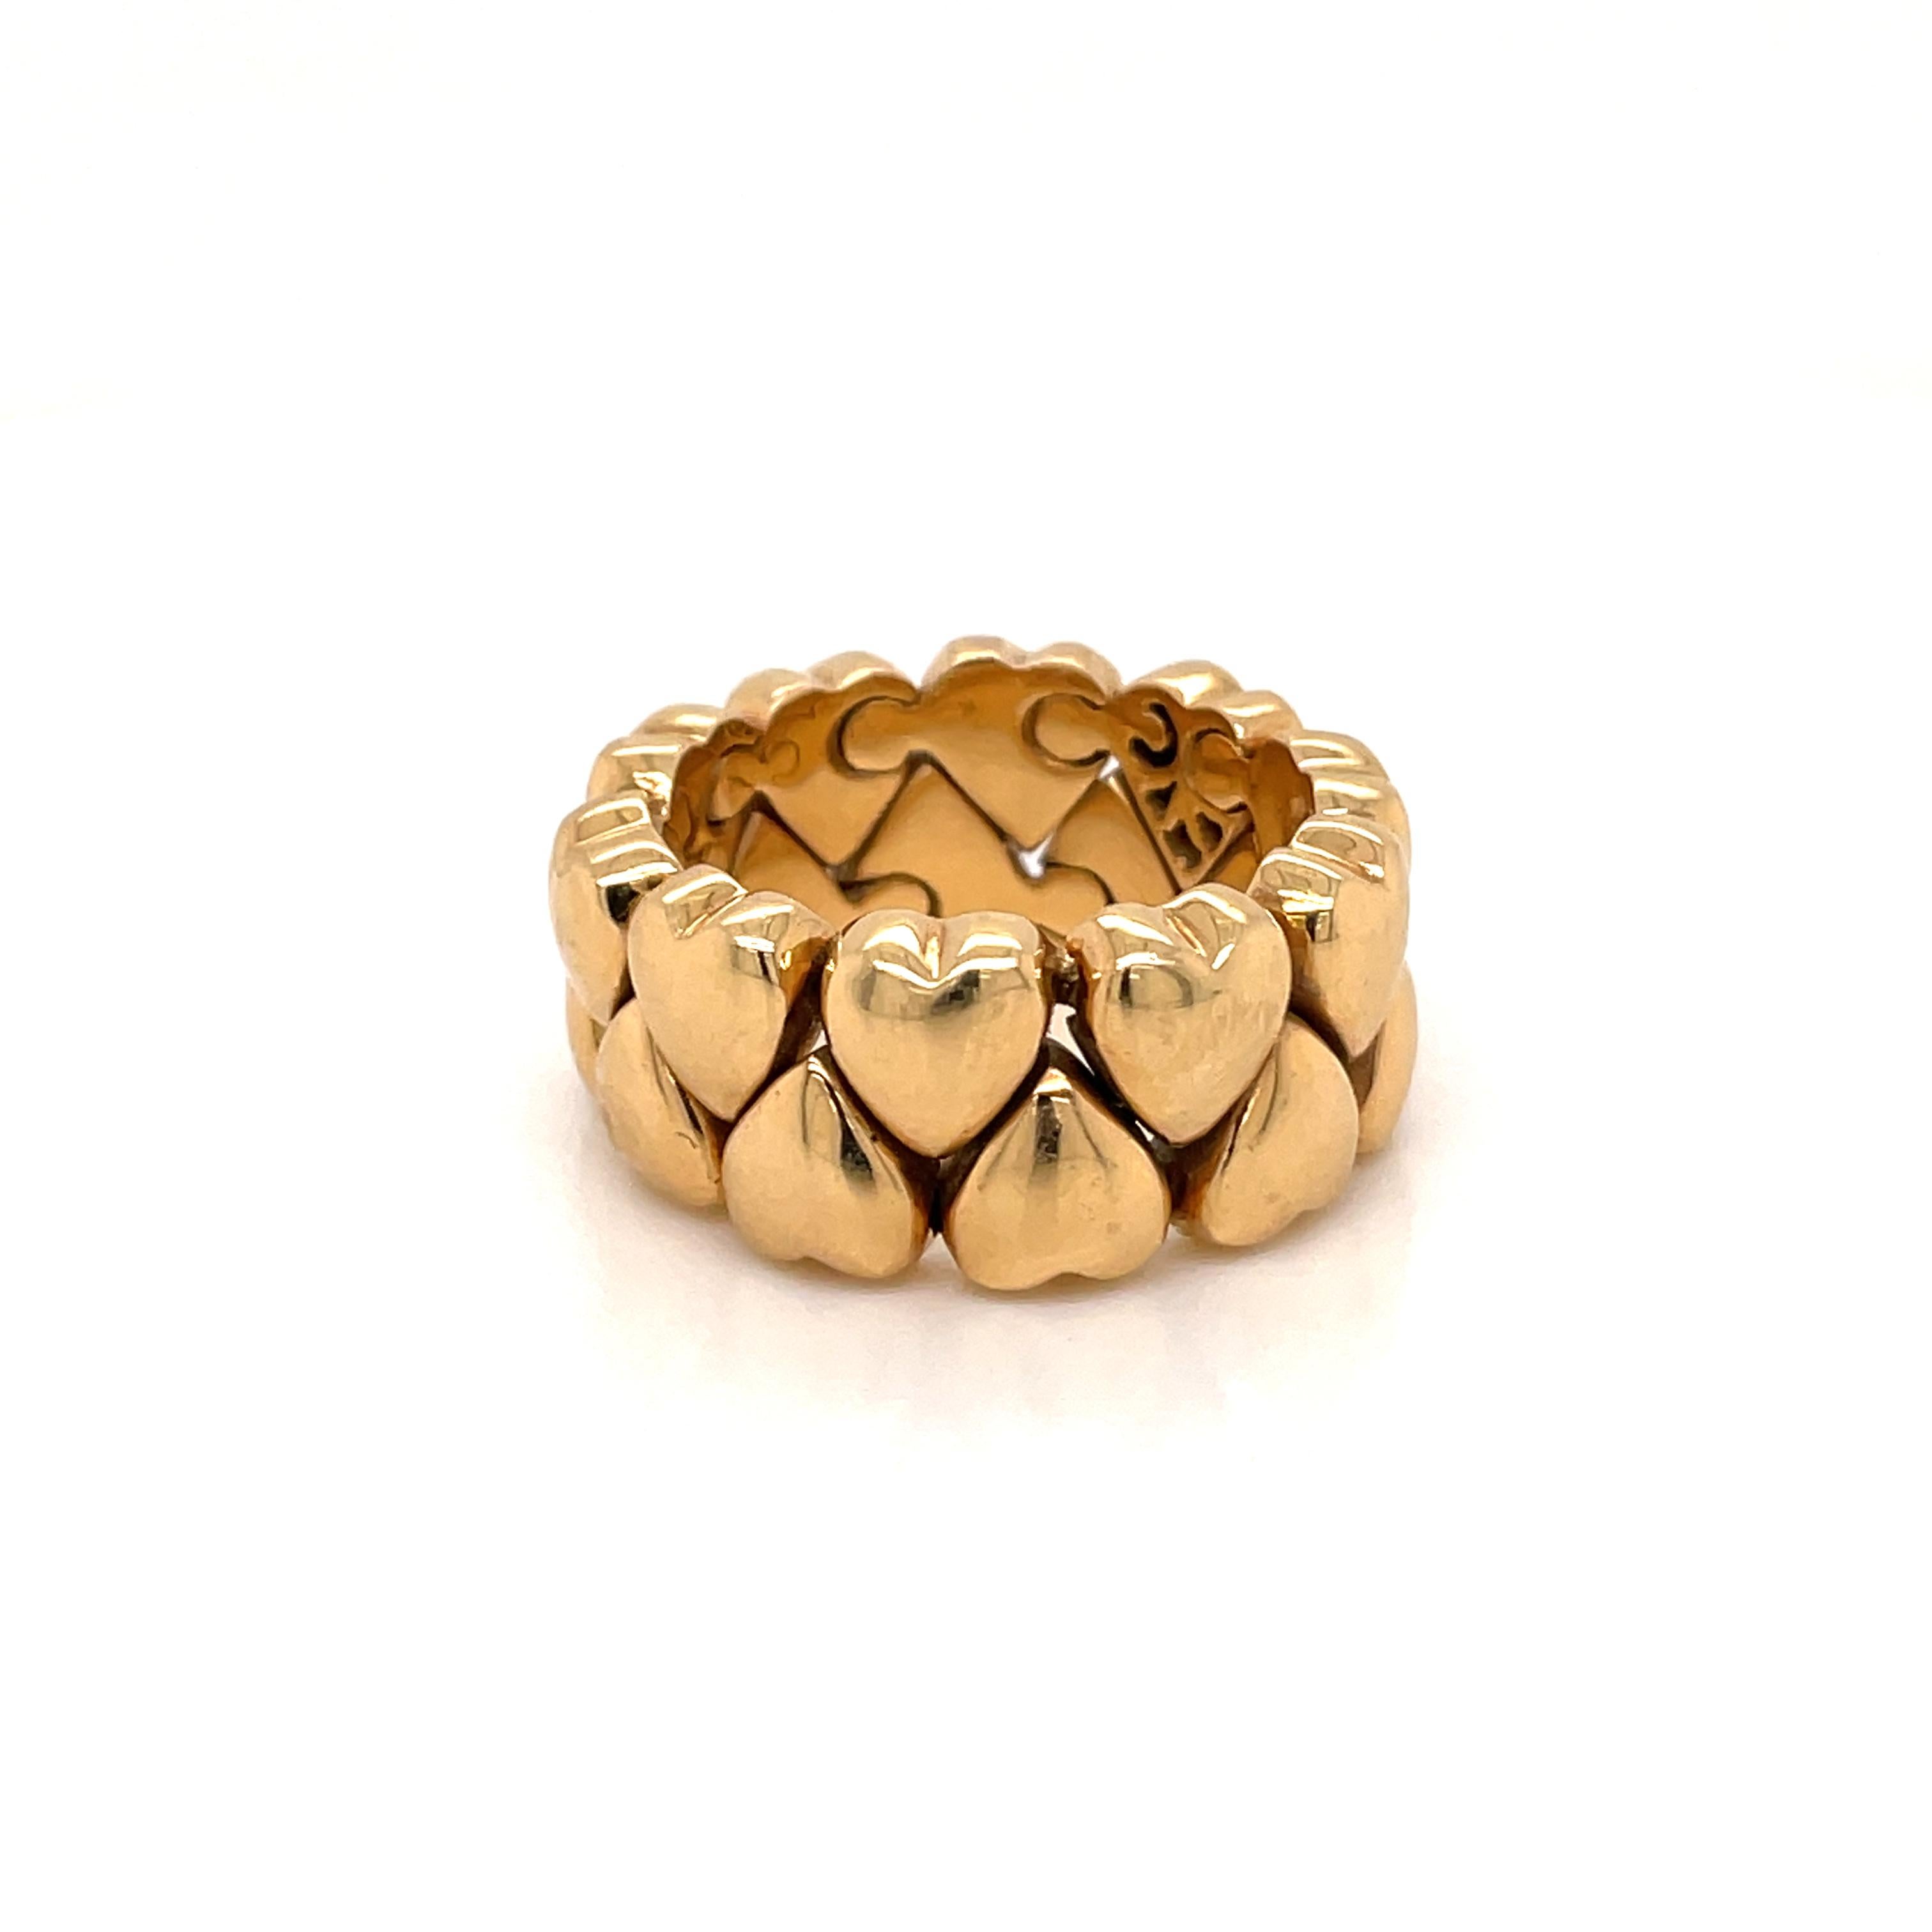 Ikonischer Cartier-Ring aus der Collection'S Double Coeurs
Flexibler Ring, bestehend aus zwei Reihen polierter Goldherzen, mit einem vollständig mit Diamanten besetzten Herz, ca. 0,15 Karat, Farbe IF.

Gezeichnet: vollständig signiert Cartier, 1995,